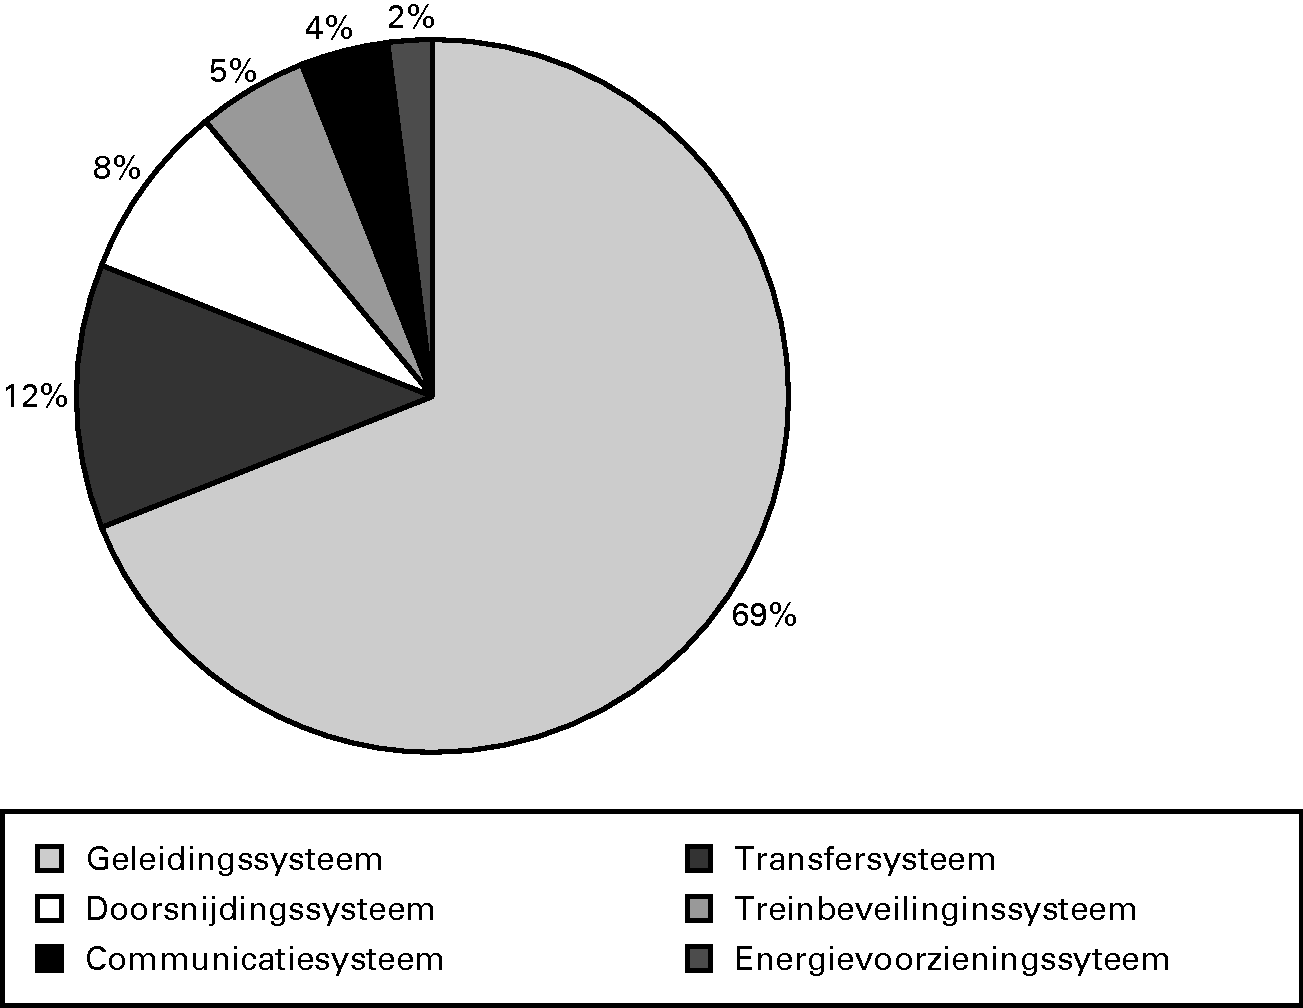 Vervangingsinvesteringen verdeeld naar systemen (gebaseerd op productieplan 2012):